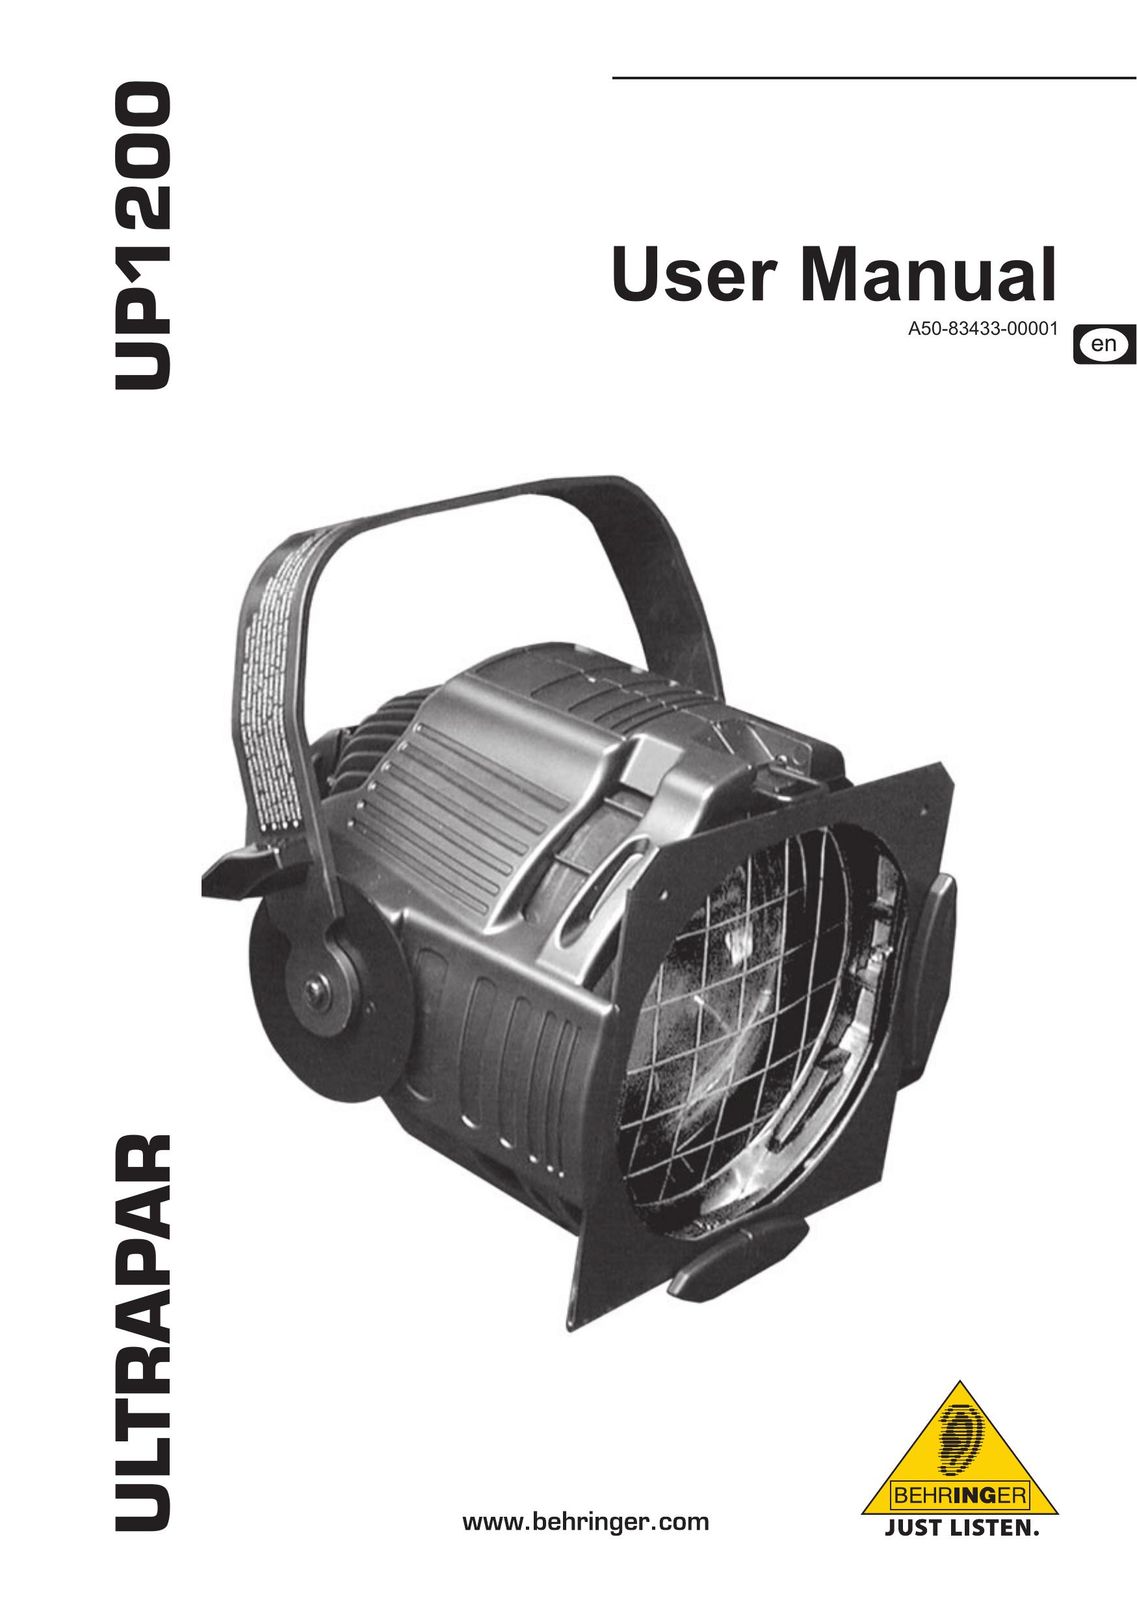 Behringer up1200 Work Light User Manual